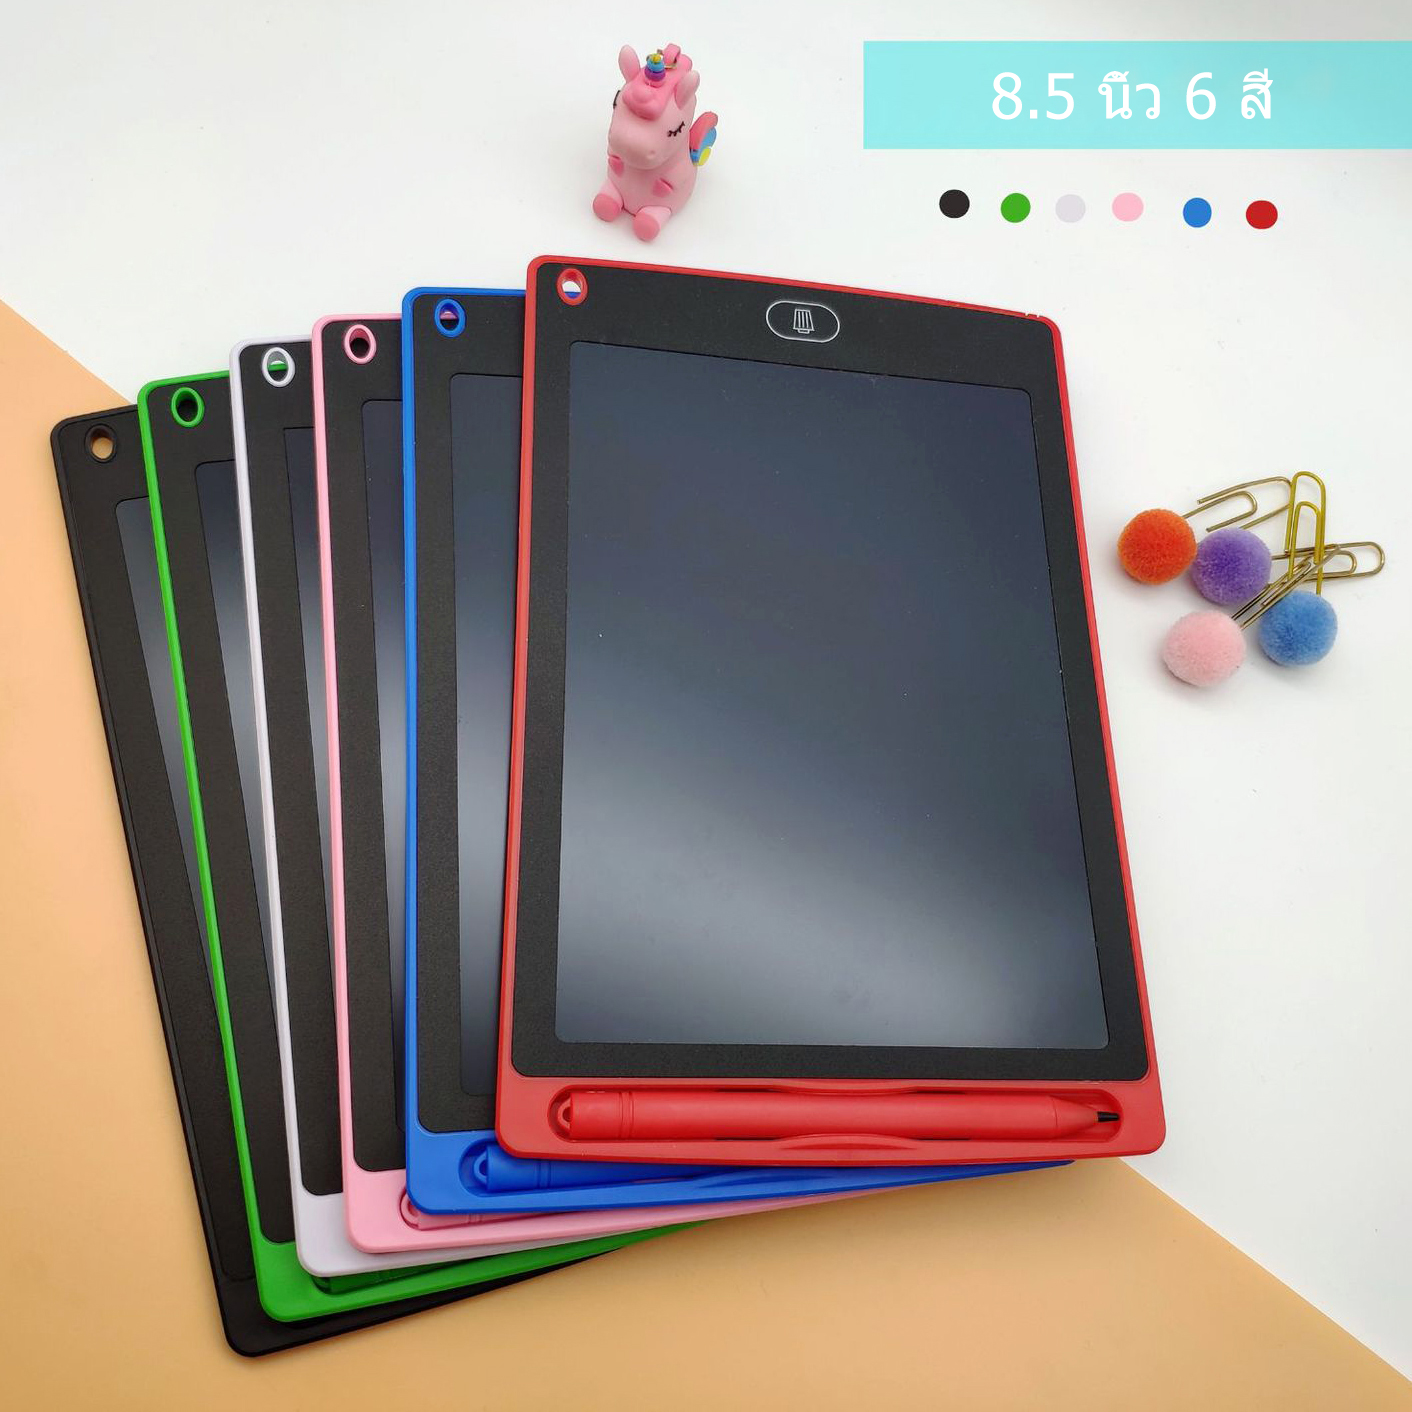 แป้นวาดภาพ กระดานวาดภาพ ขนาด  8.5นิ้ว  LCD Magical Writing Tablet Board Children Gifts Drawing Tablet Digital Tablet Office Electronic Notepad Paperless  8.5 inch MY95